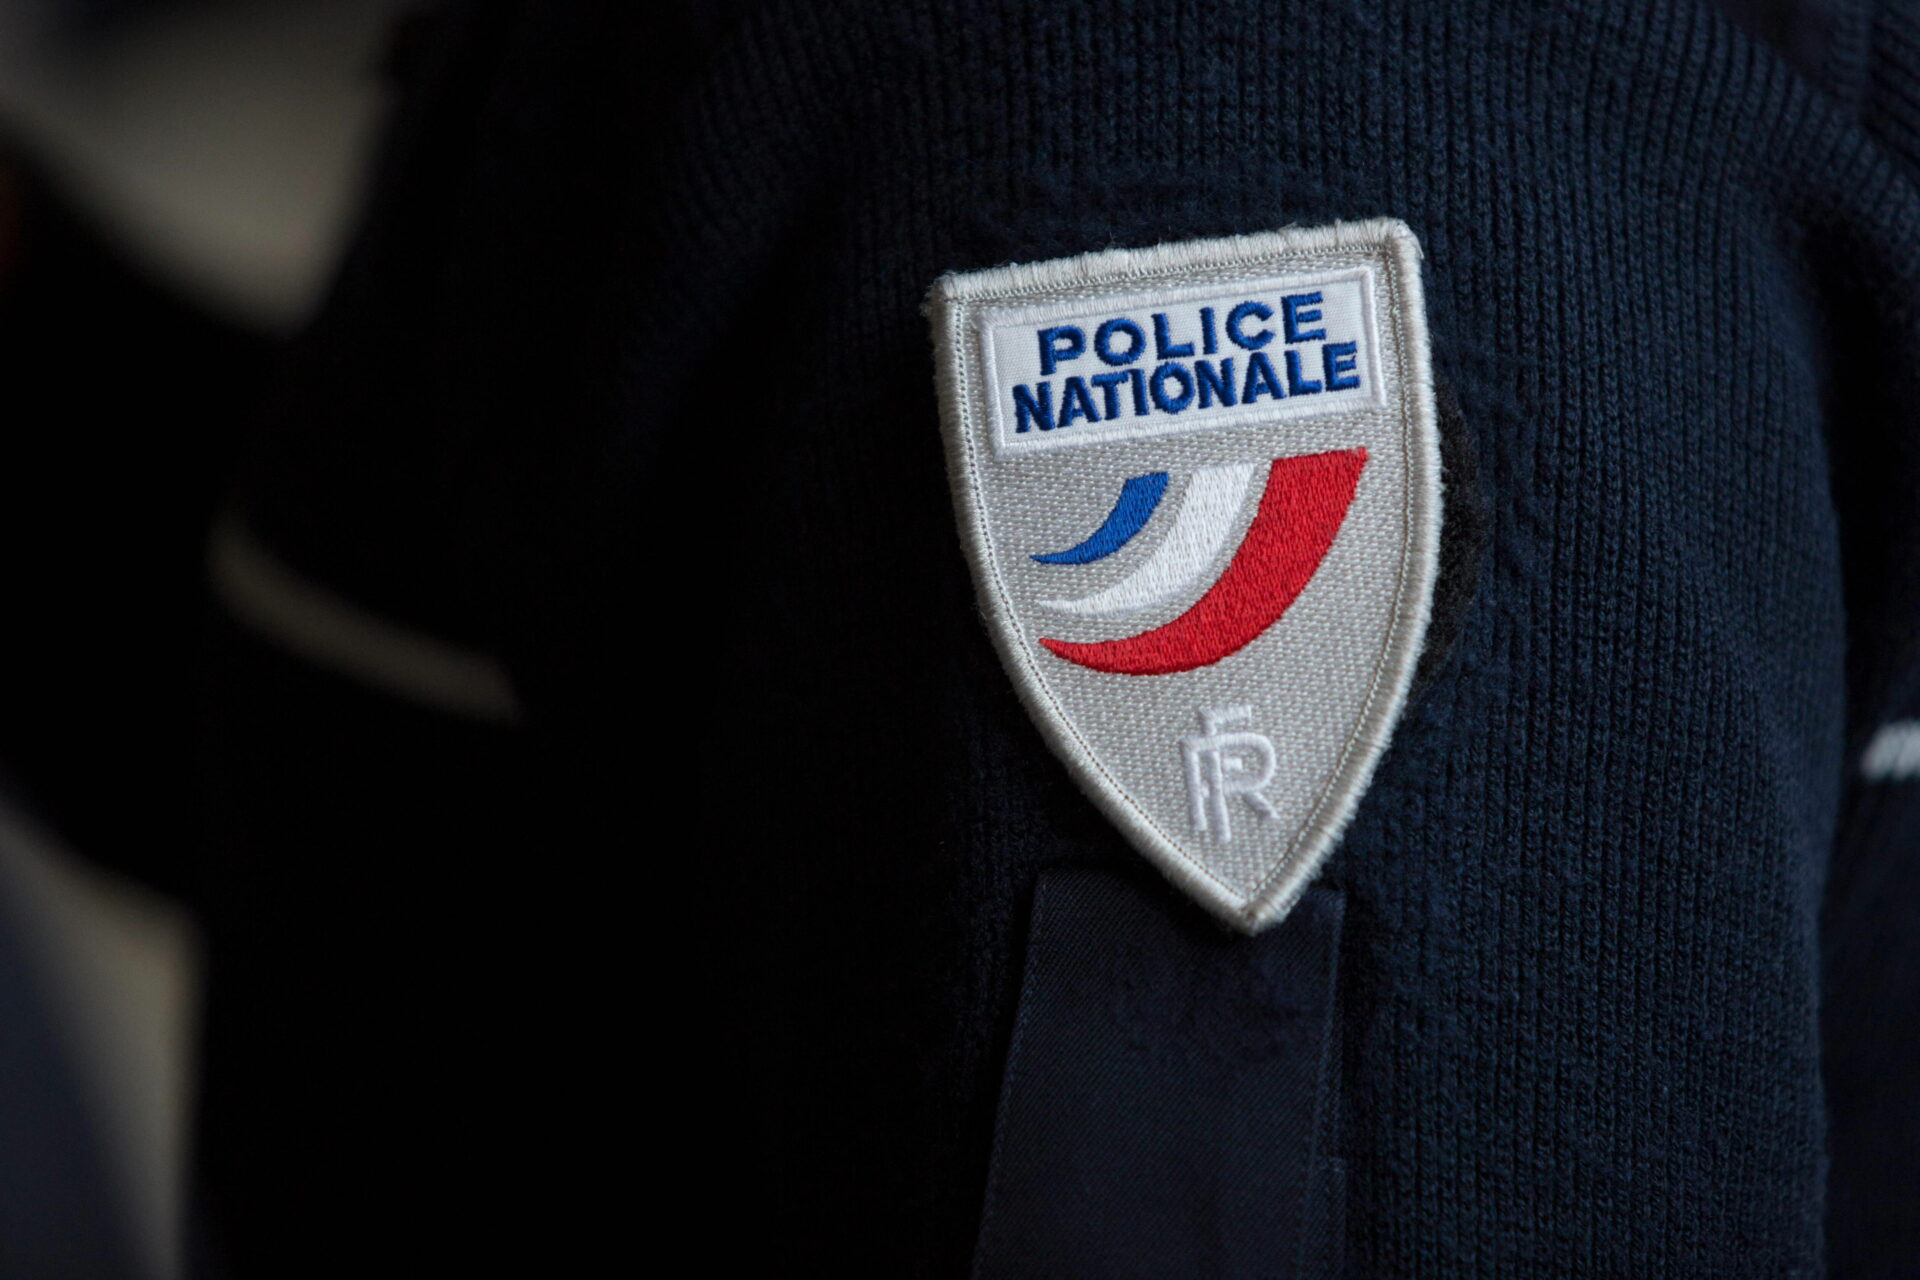 Meurtre d’un adolescent à Saint-Denis : un suspect placé en garde à vue